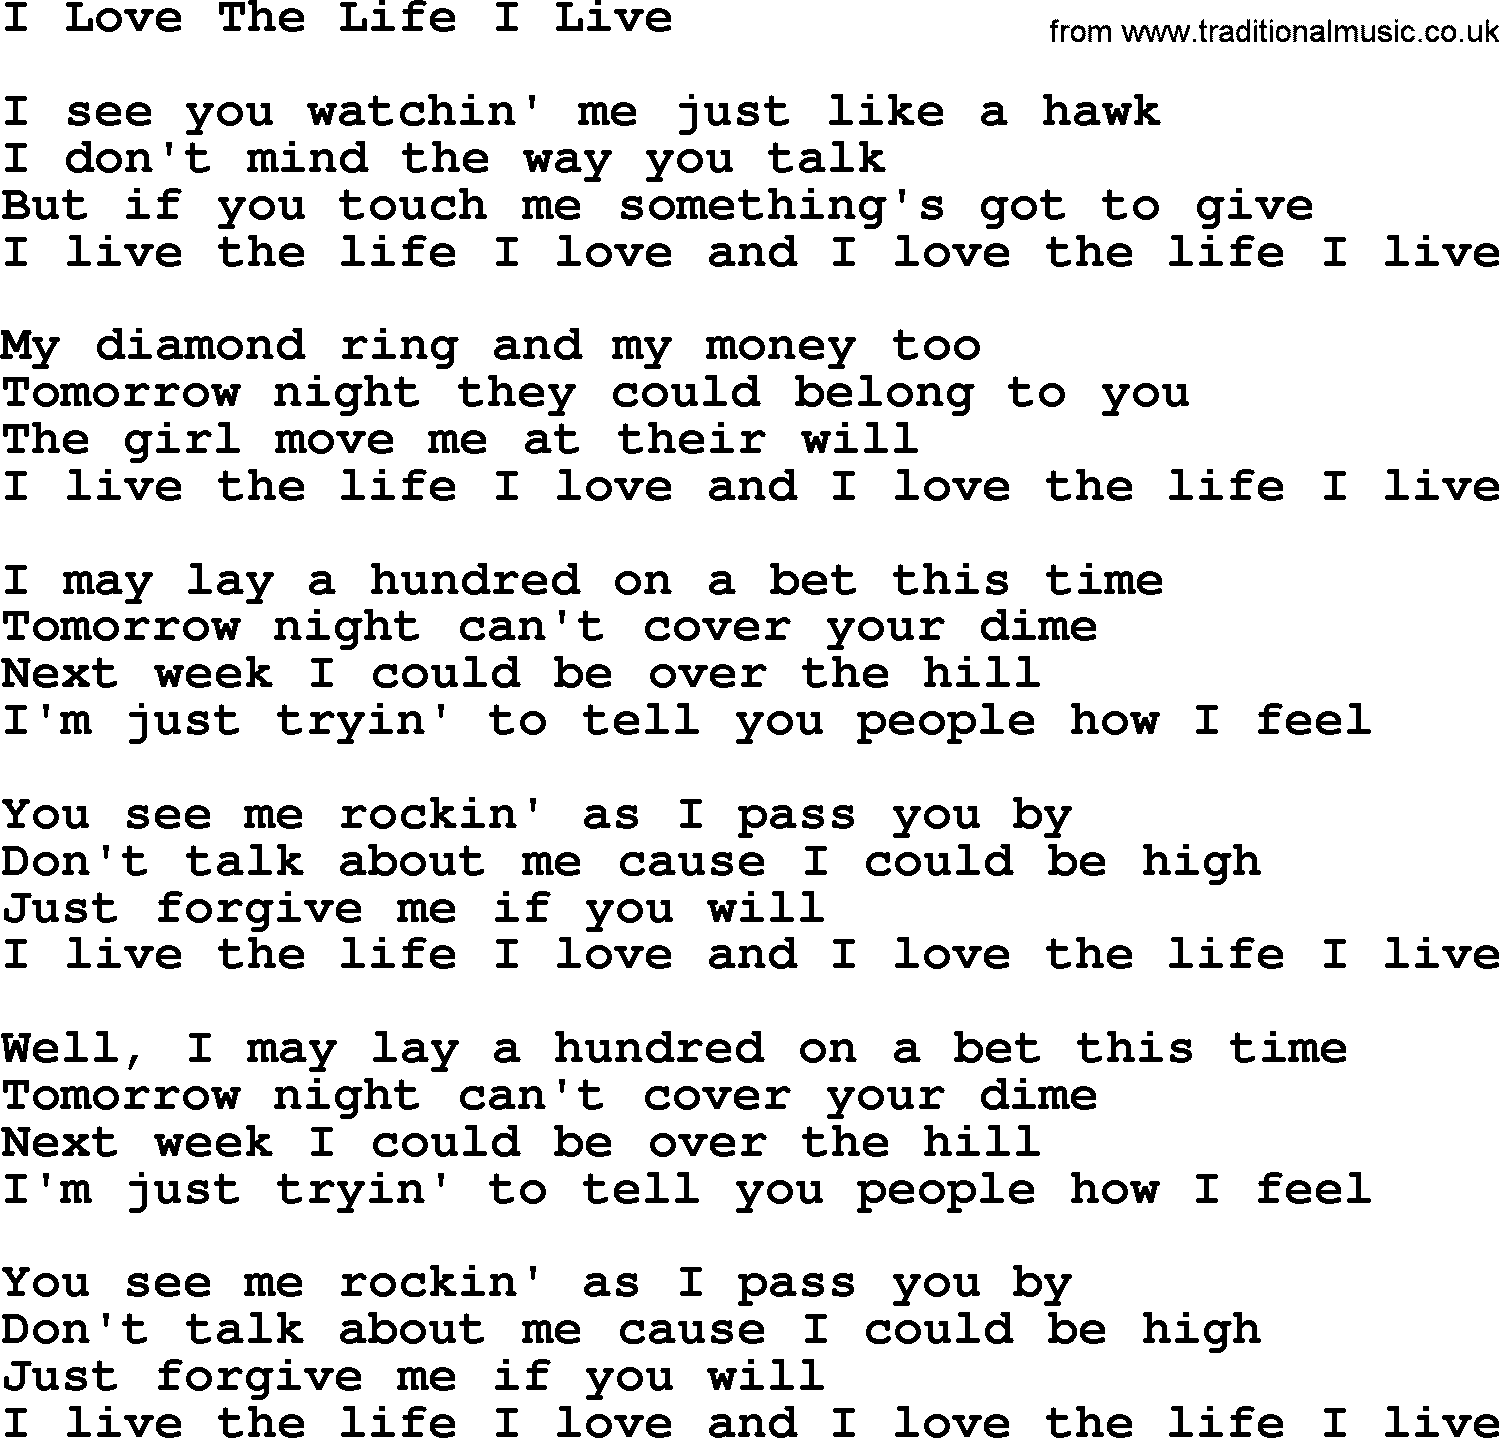 Willie Nelson song: I Love The Life I Live lyrics